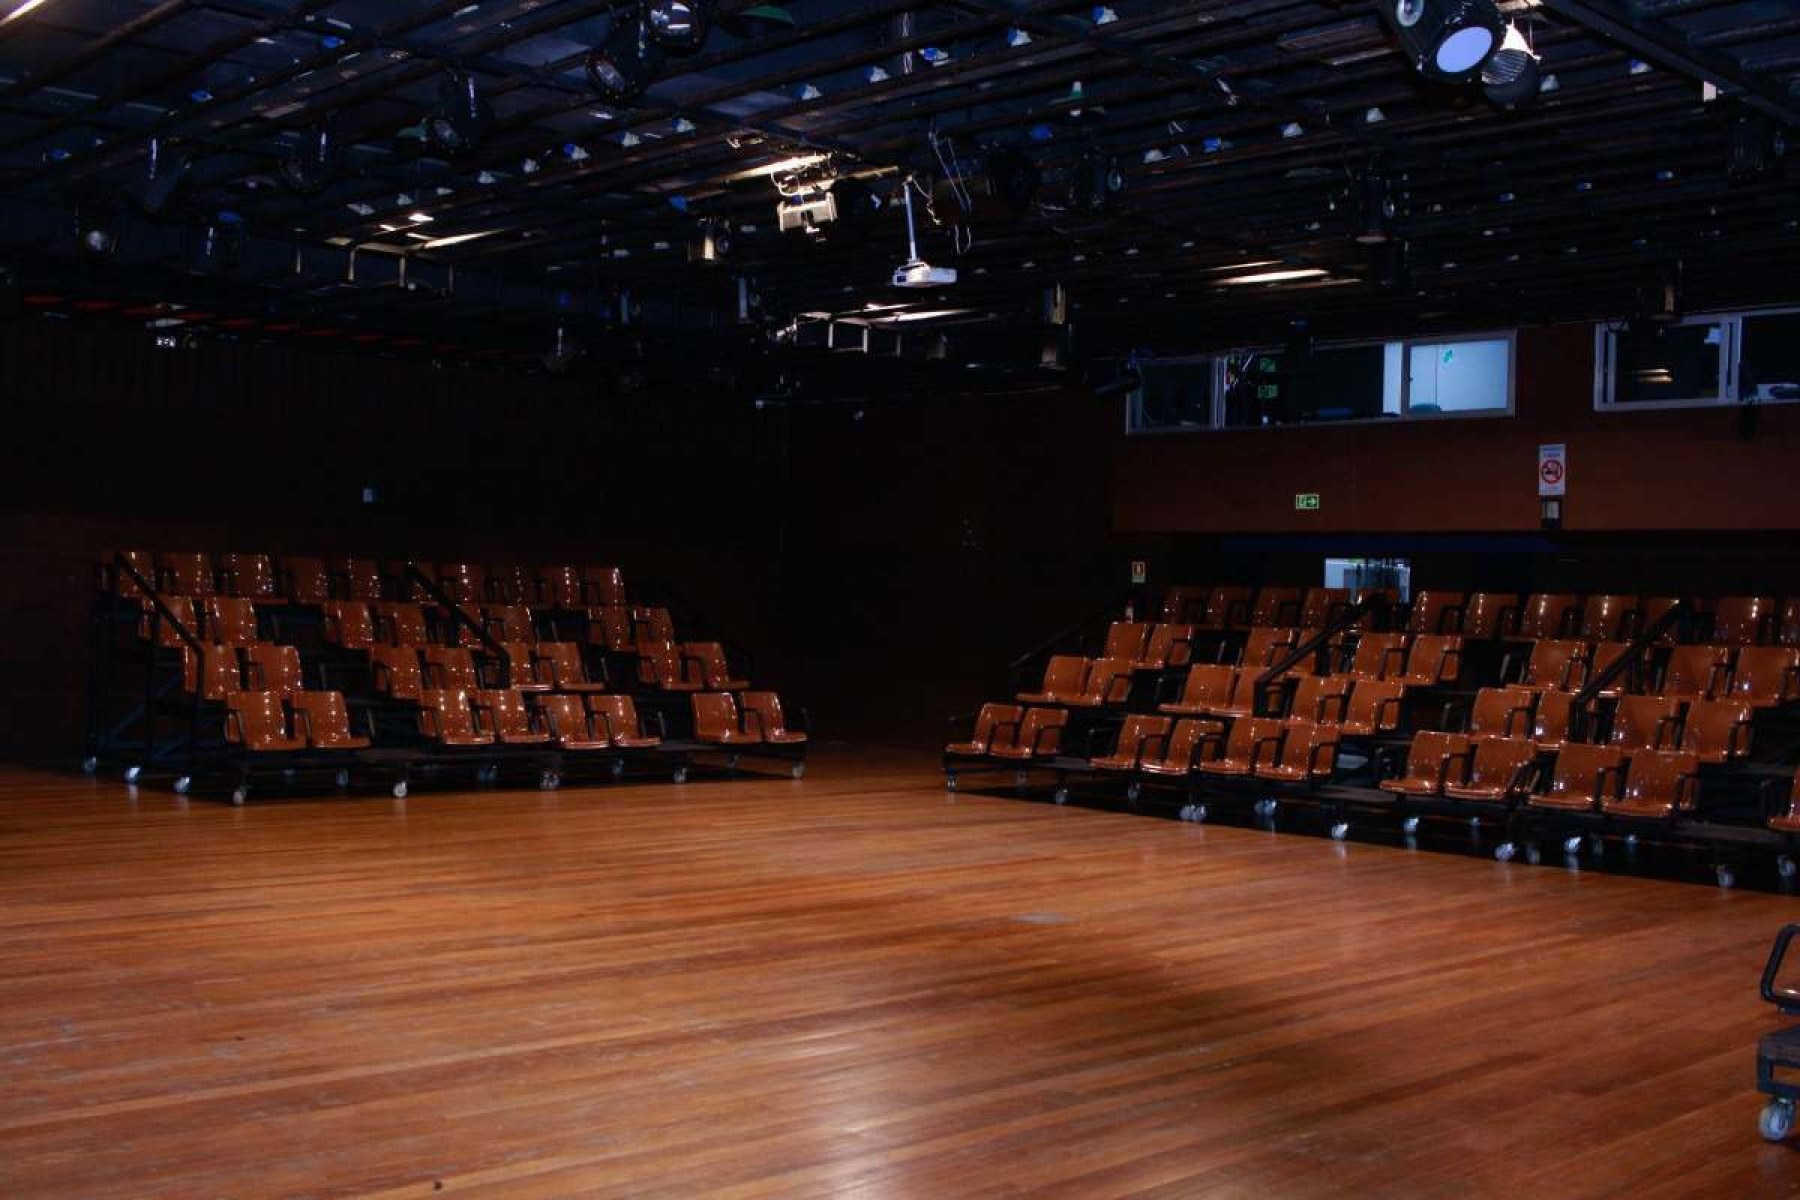 Palco Giratório chega ao DF com apresentação de 14 peças de teatro